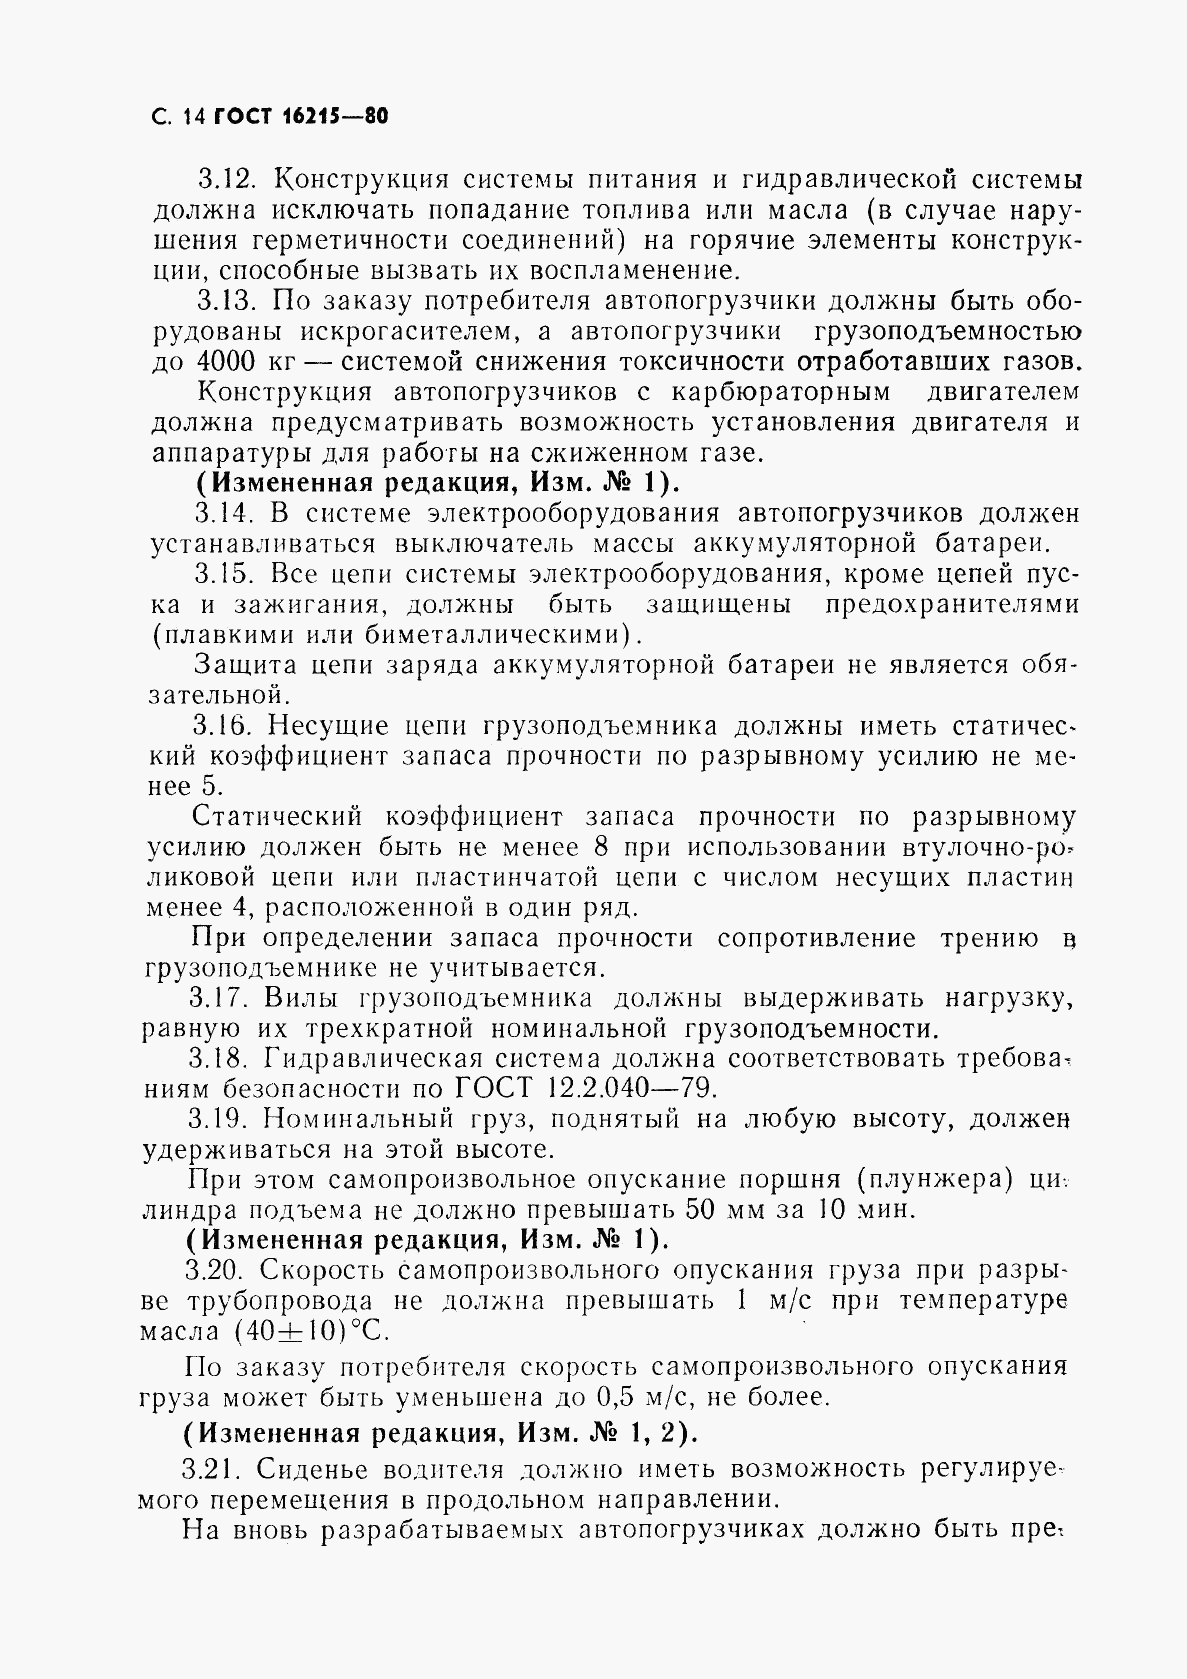 ГОСТ 16215-80, страница 16